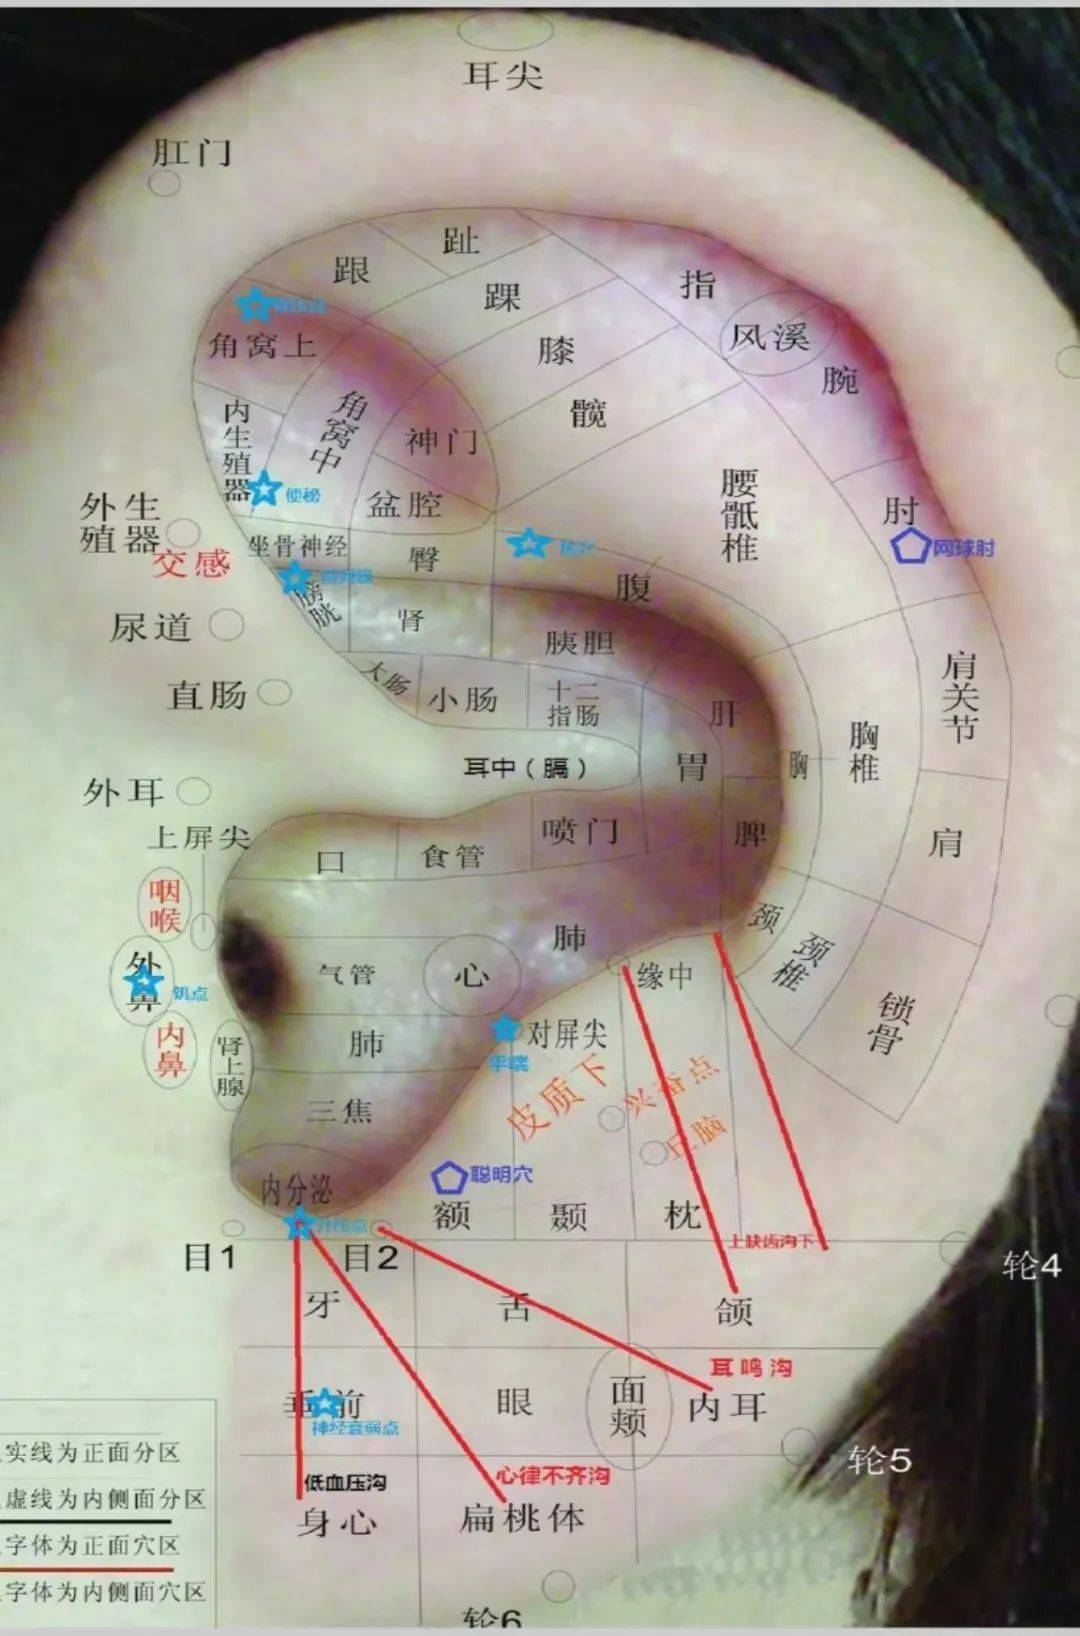 耳穴也叫反应点,敏感点,压痛点,阳性点等,是诊断,治疗疾病的特定点